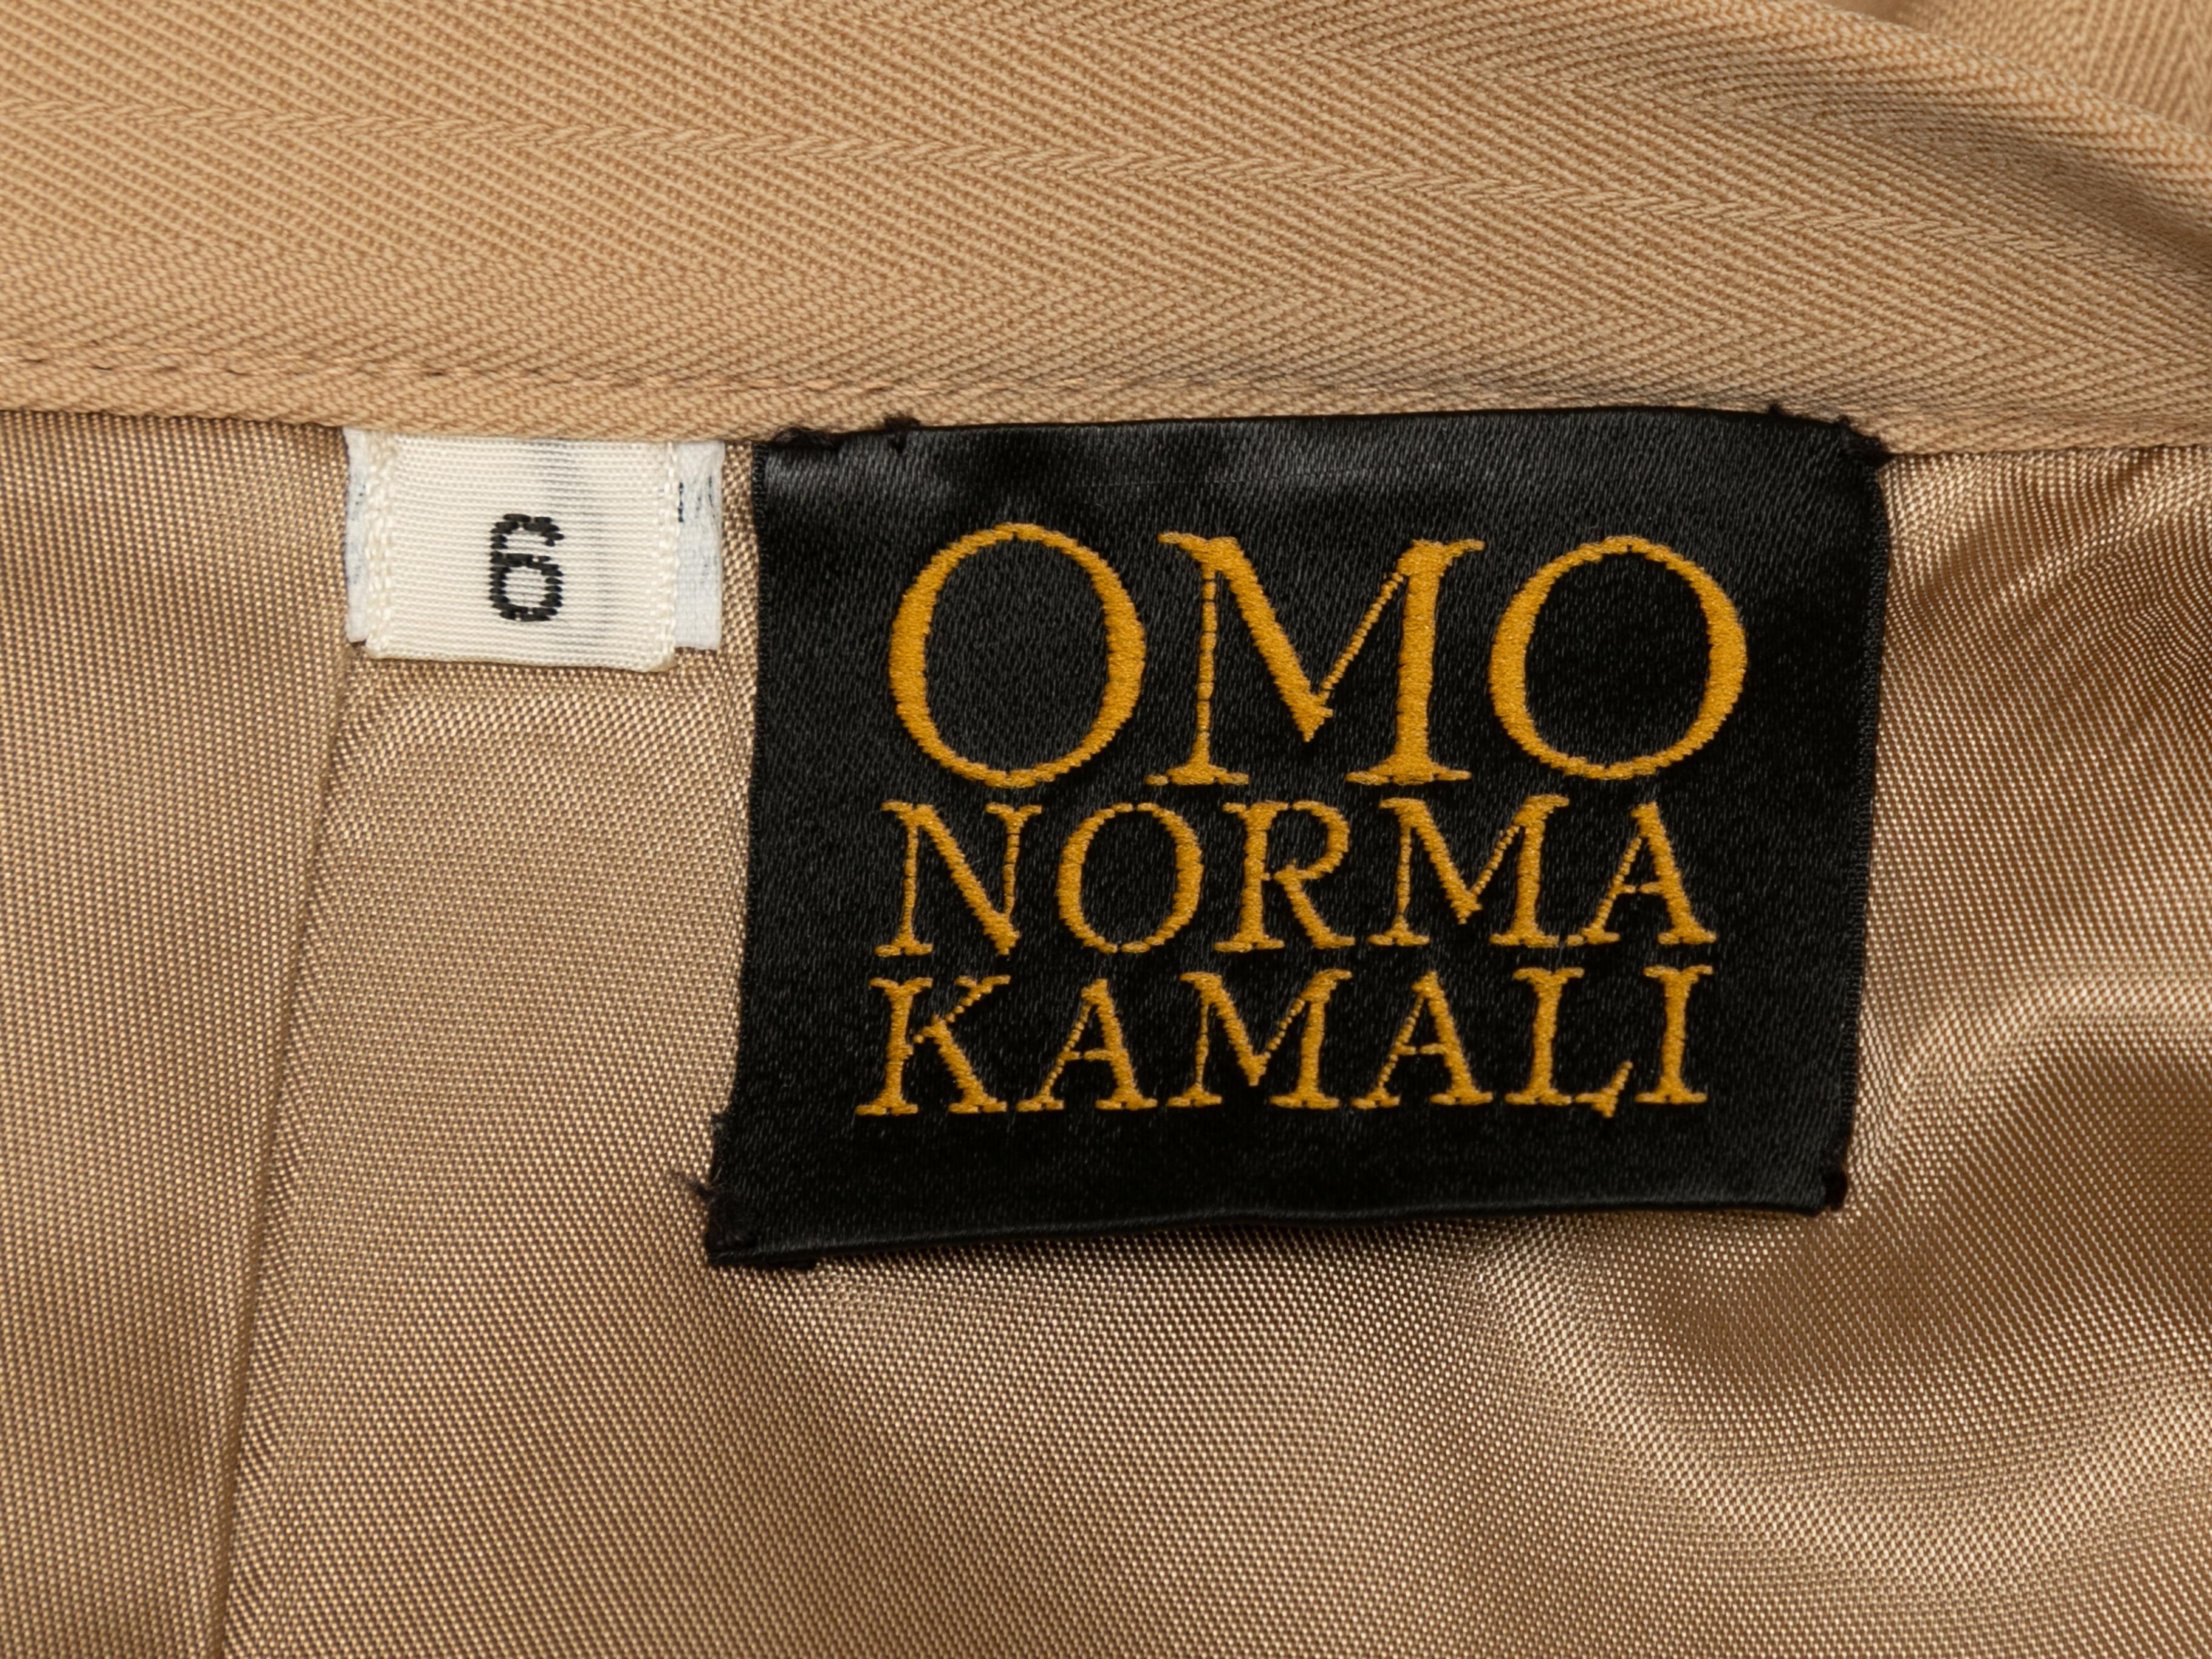 Hellbrauner Vintage-Bleistiftrock von Omo Norma Kamali. Ca. 1980er Jahre Reißverschluss am Rücken. 26